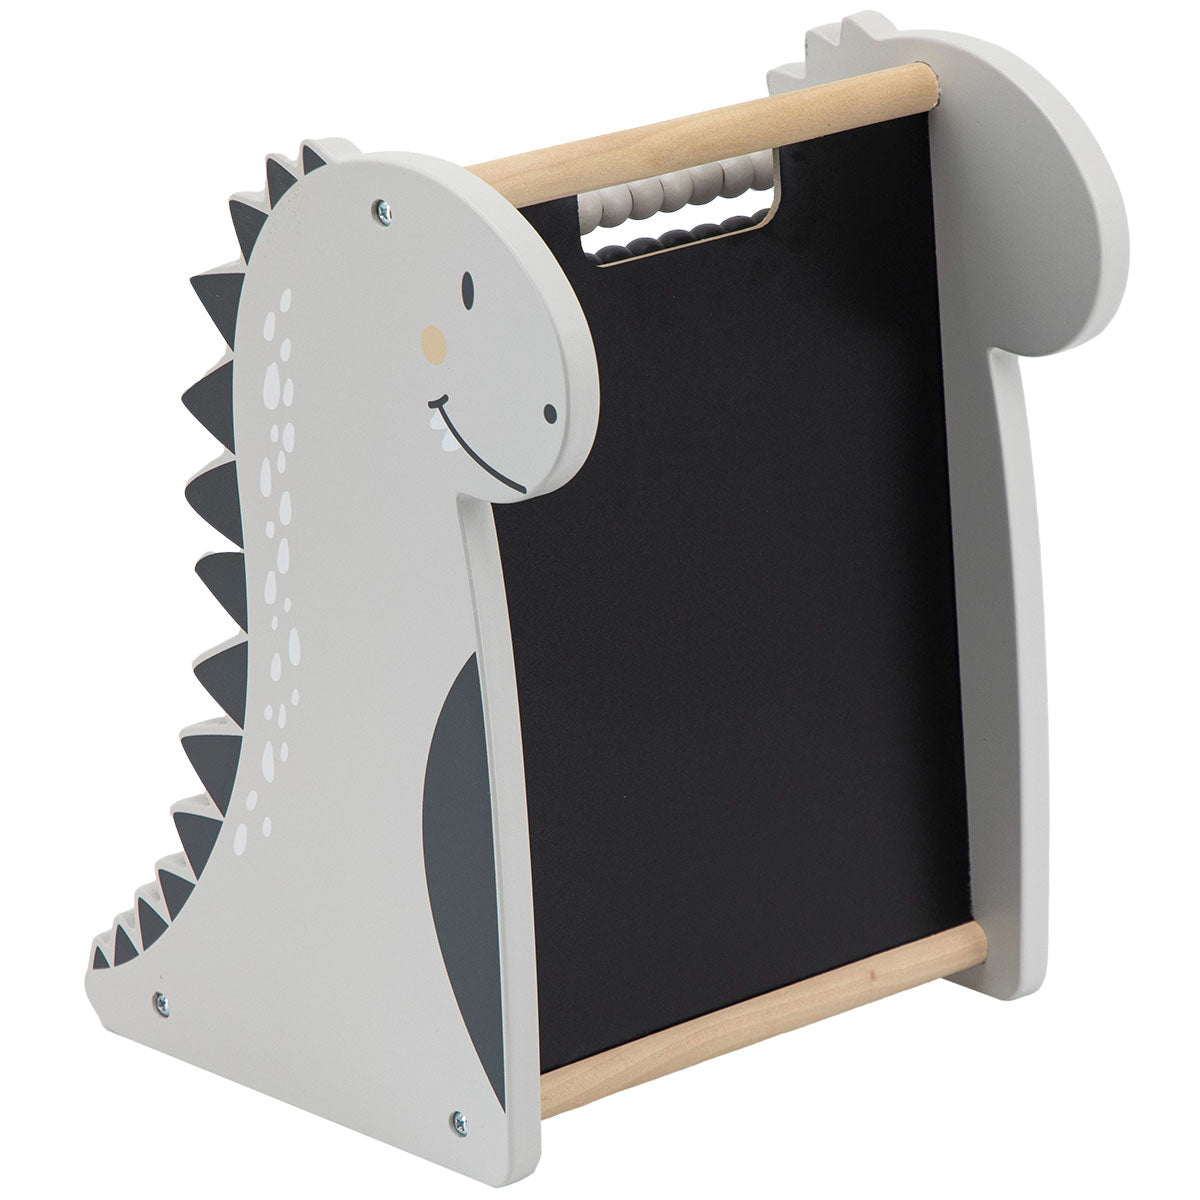 Met het Tryco telraam dinosaurus leert jouw kindje spelenderwijs tellen en rekenen. Dit telraam is gemaakt van hout, heeft de vorm van een dino en op de achterkant zit een krijtbord. VanZus.